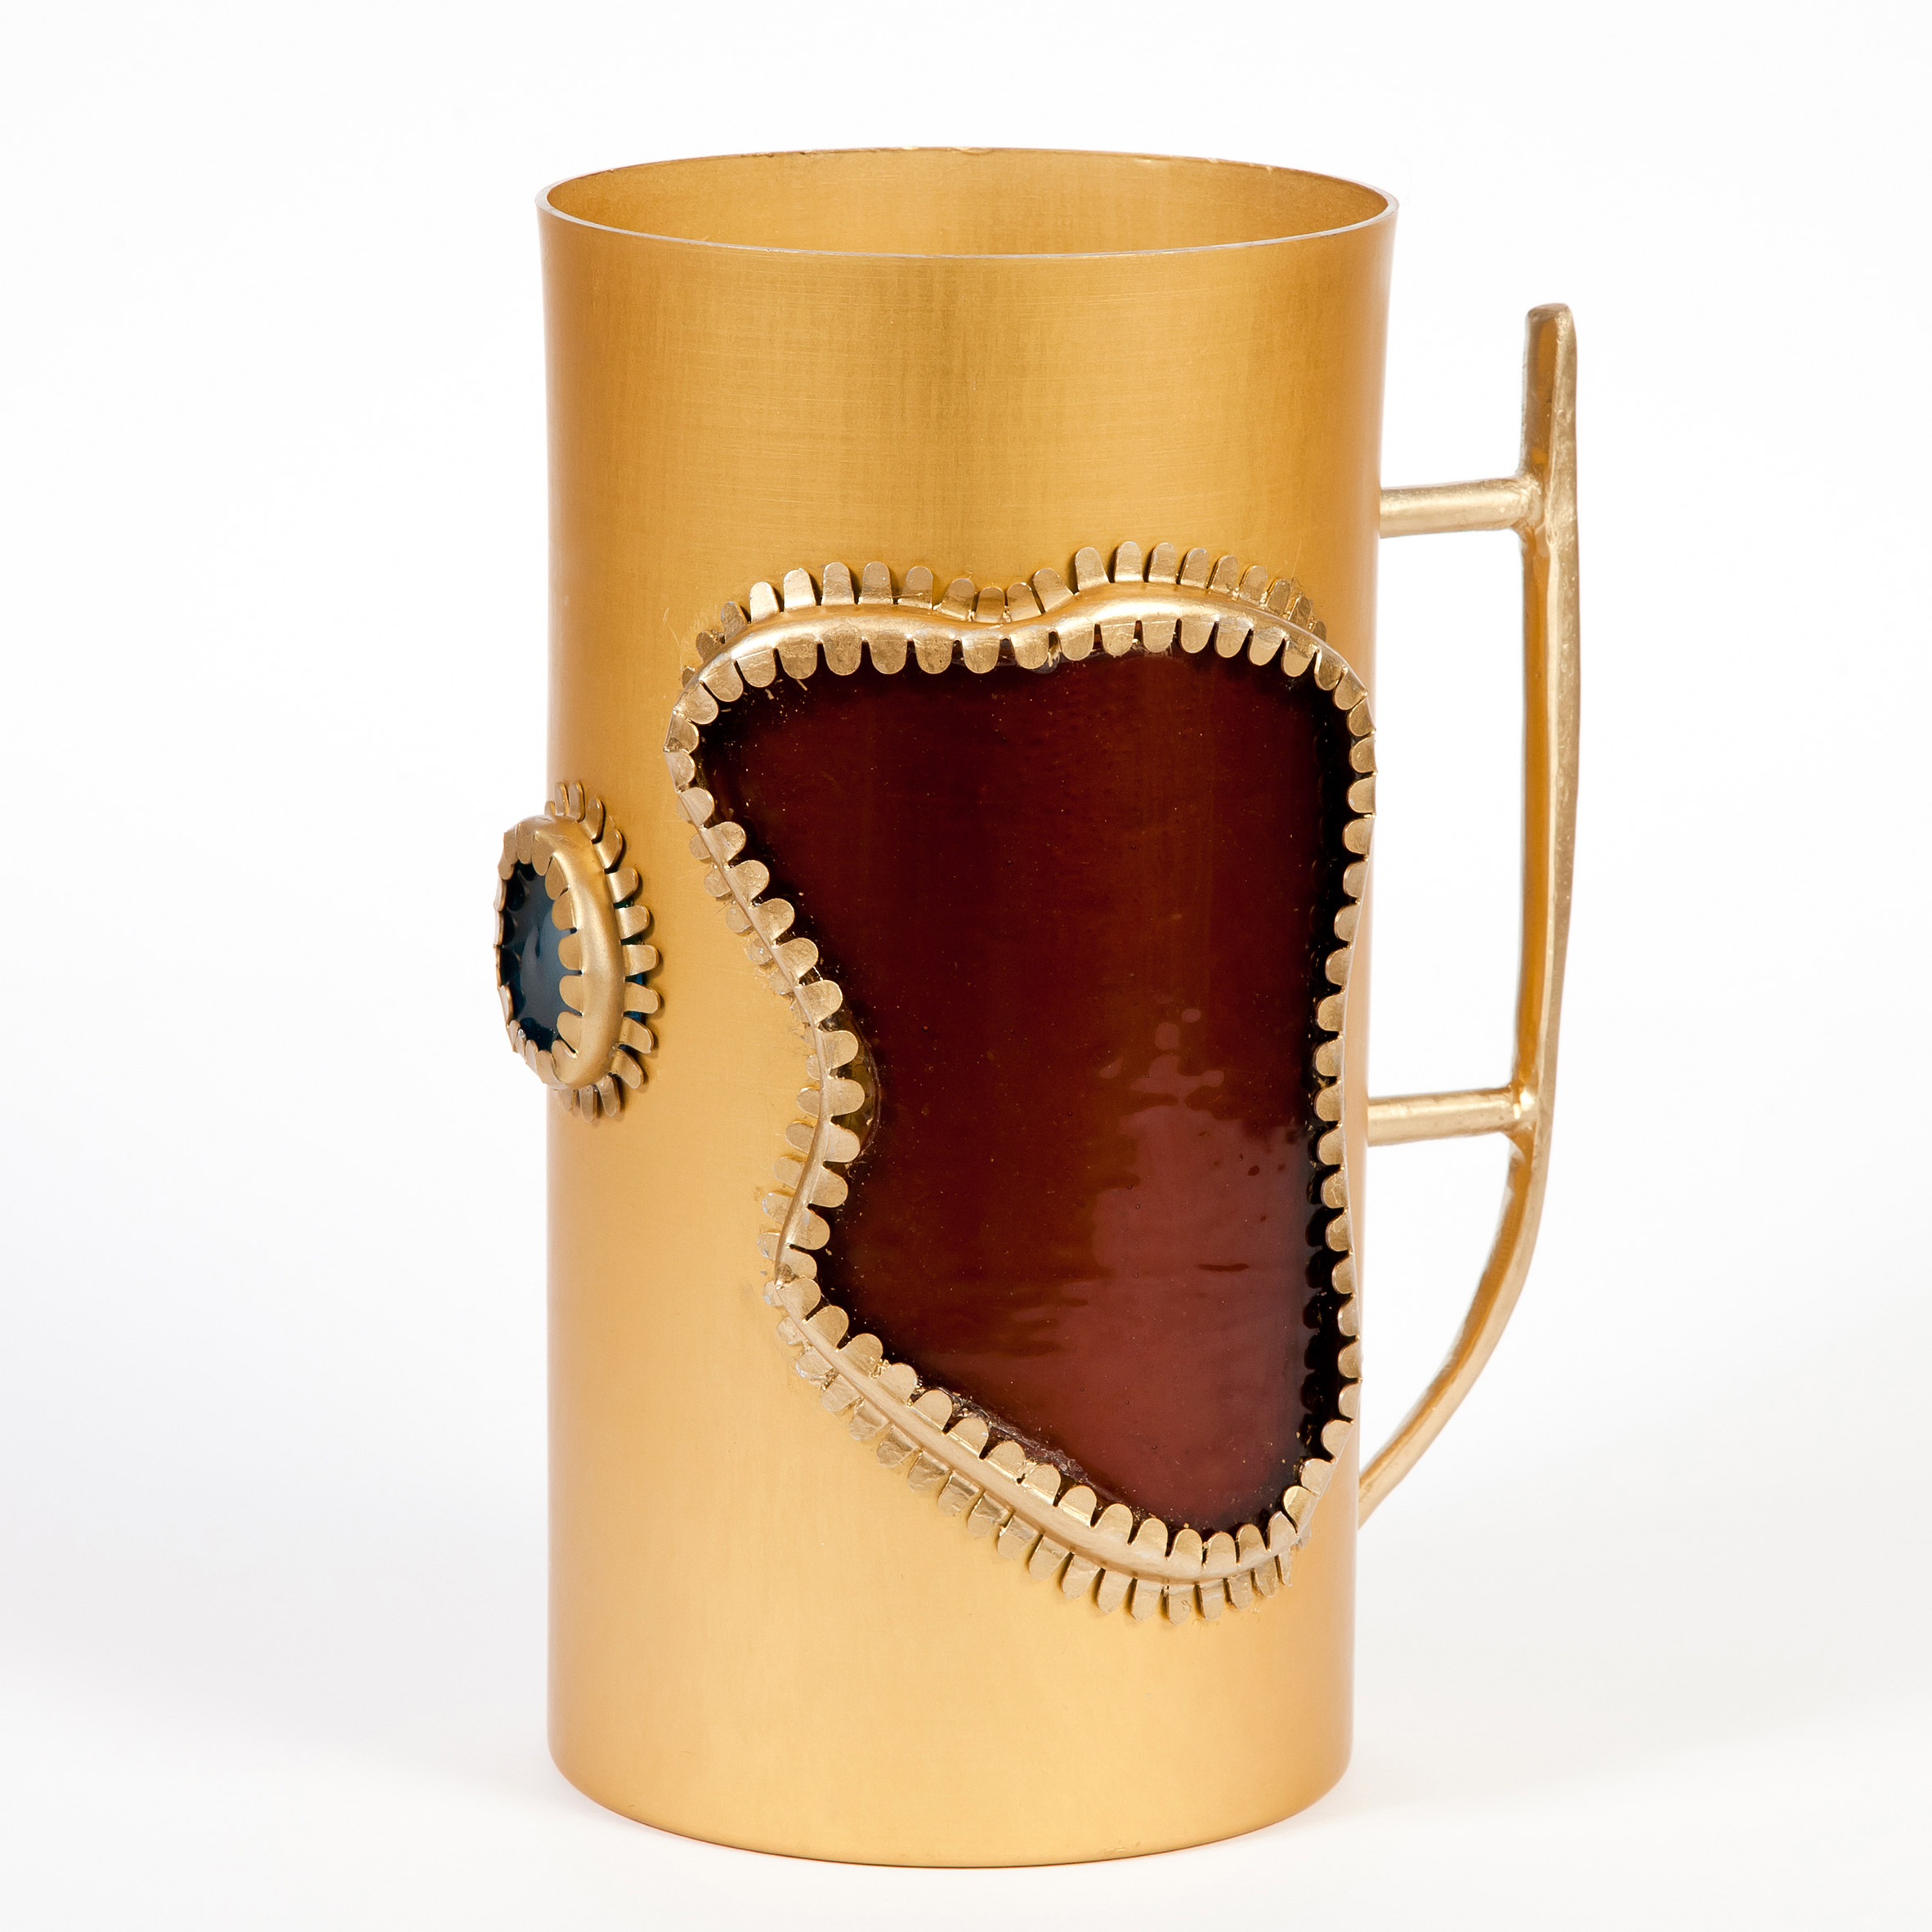 Bellyflop Collection pitcher by Misha Kahn